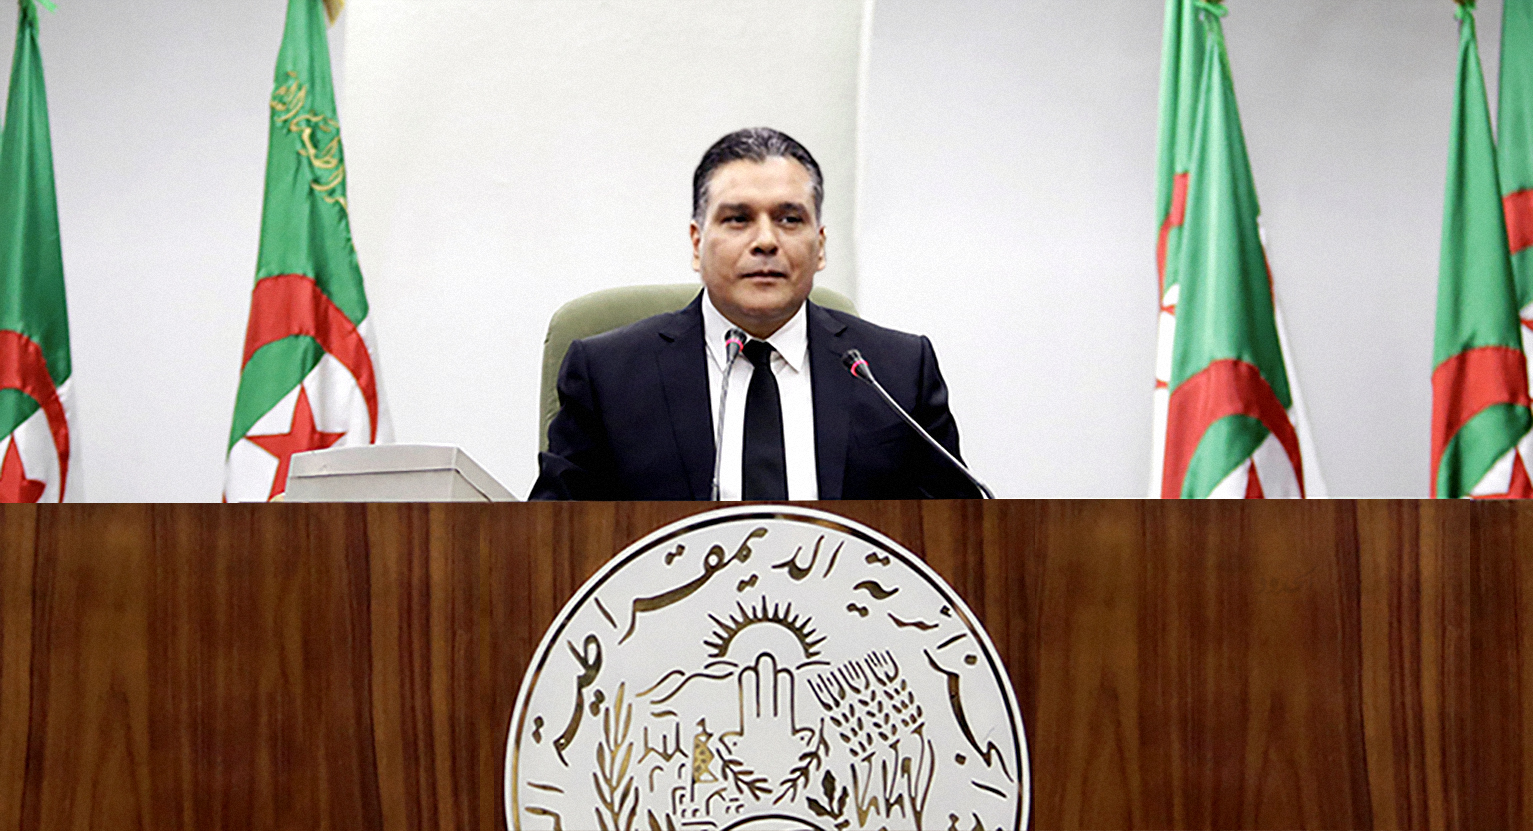 صورة الحزب الحاكم في الجزائر يعدُ المواطنين بإجراء إصلاحات جذريَّة على بوتفليقة في حال فوزه